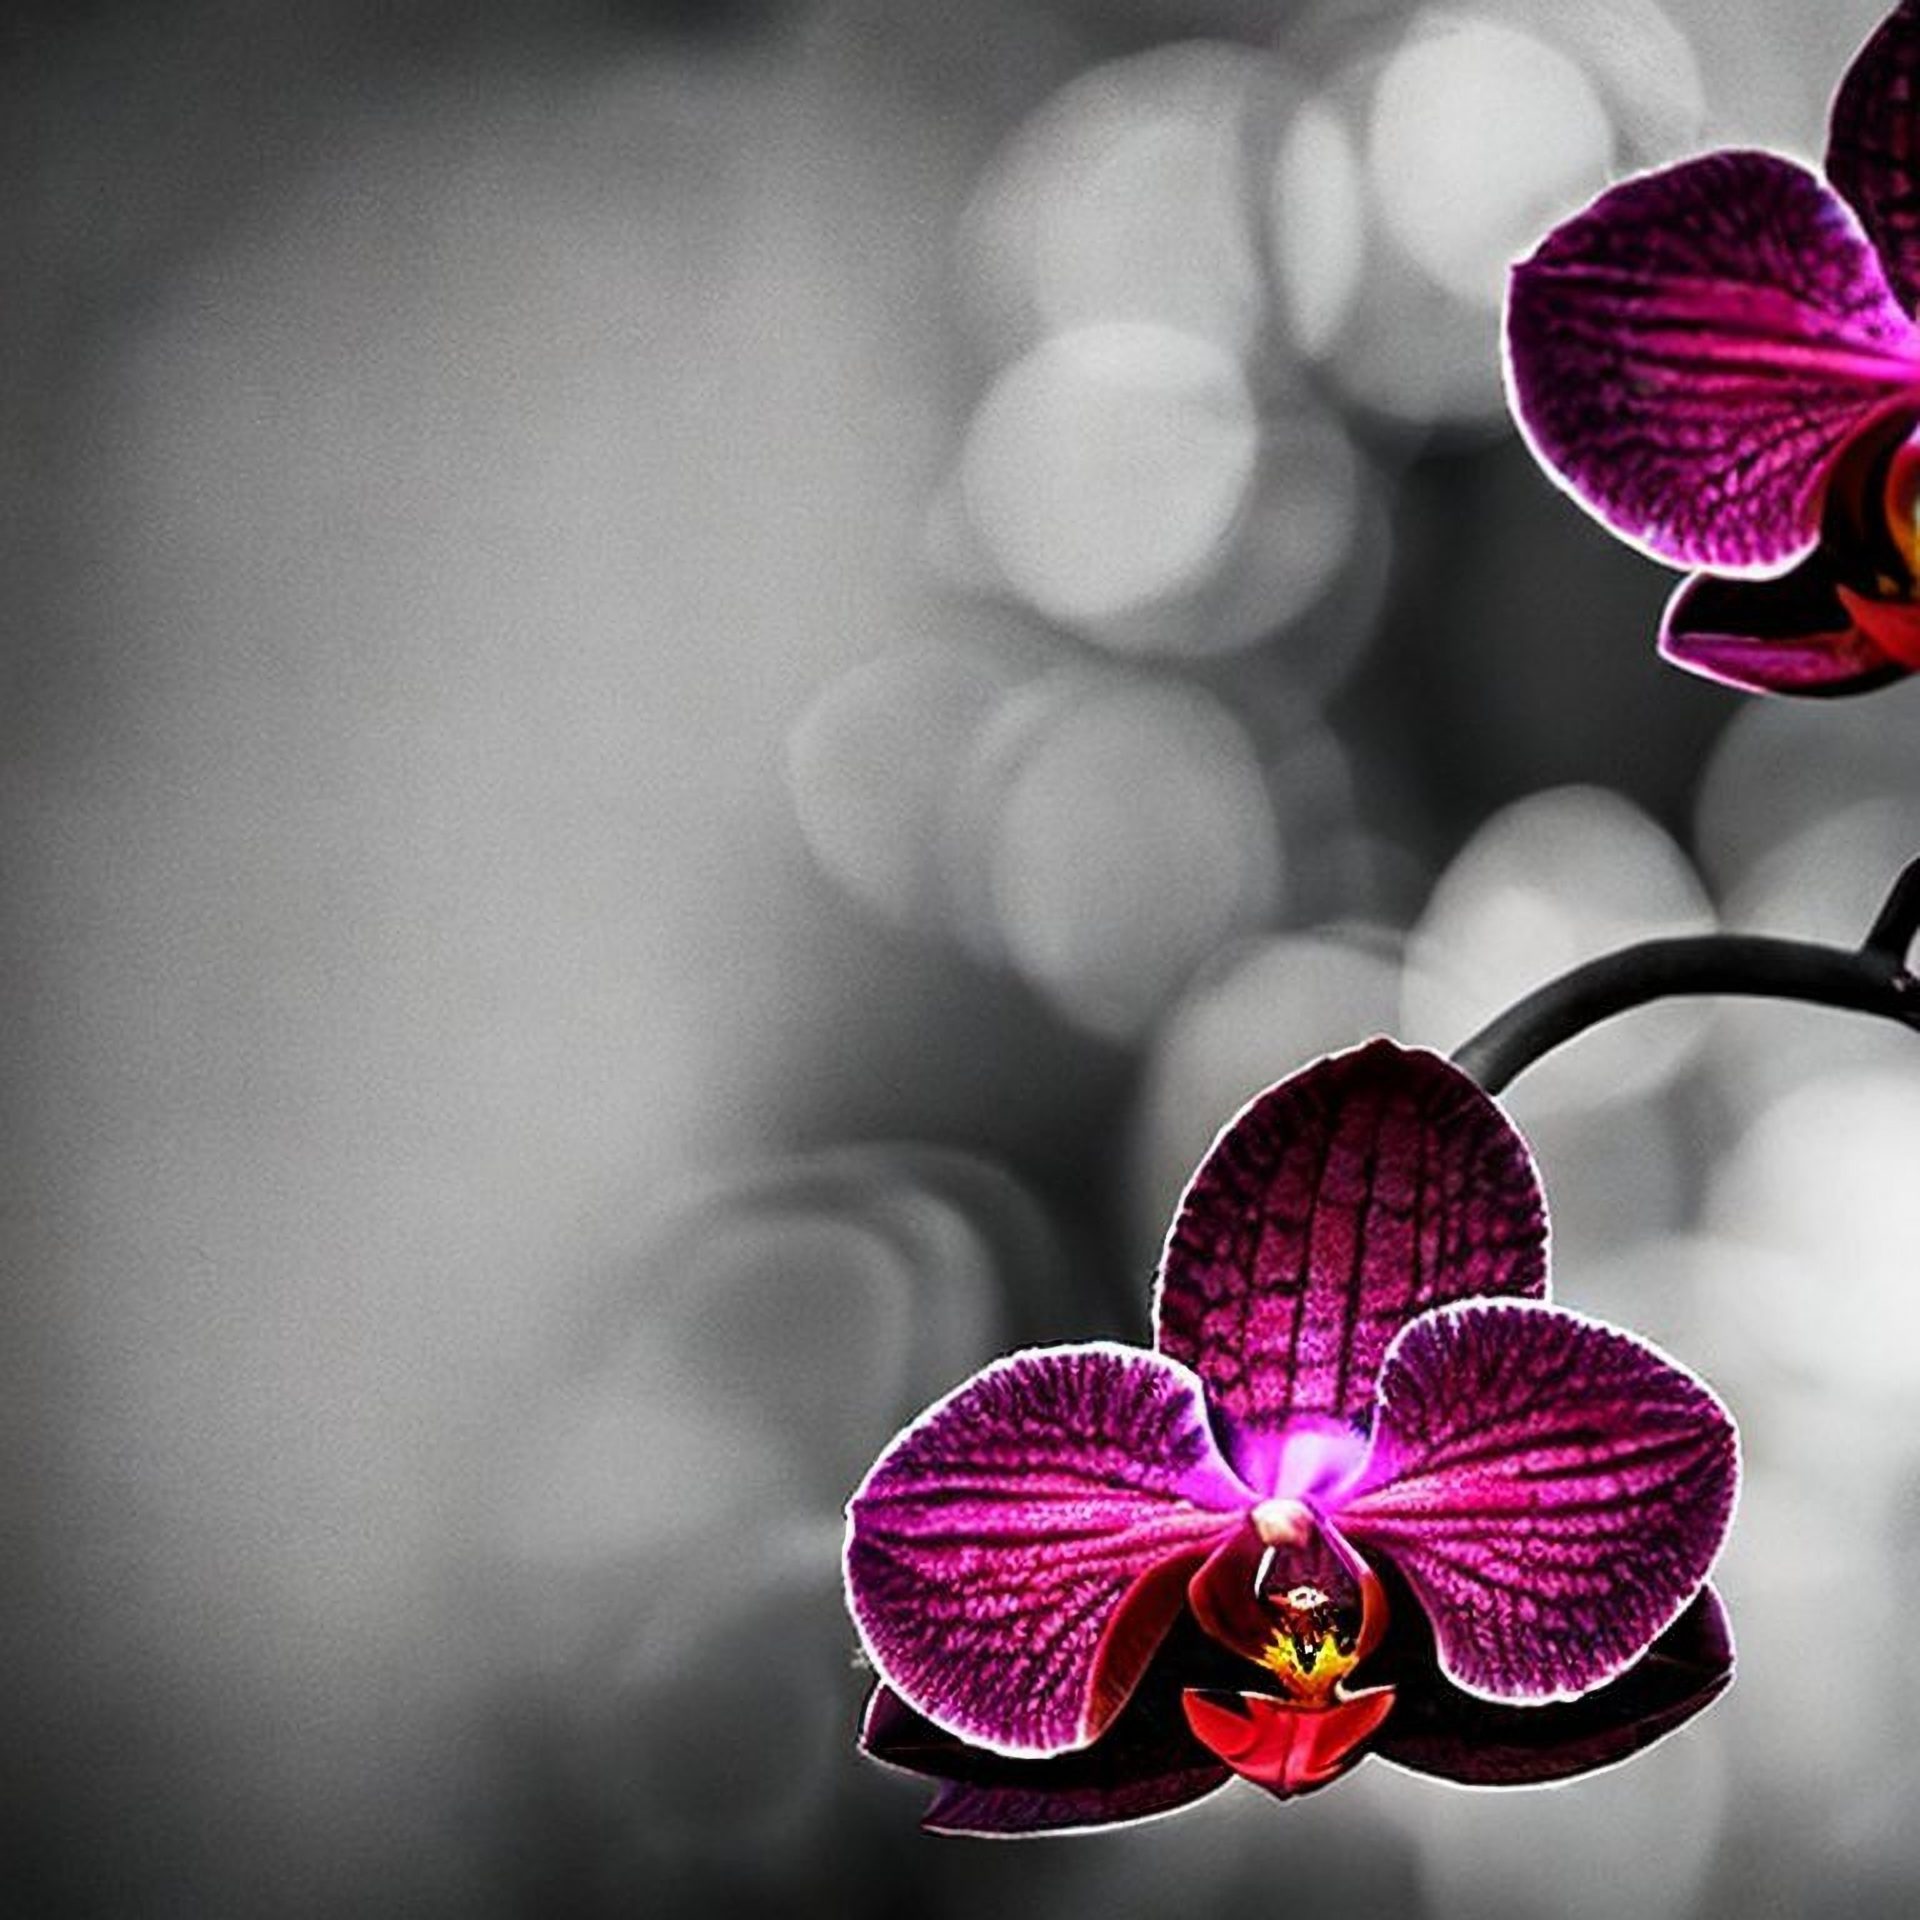 A new orchid - Vanda papillosa